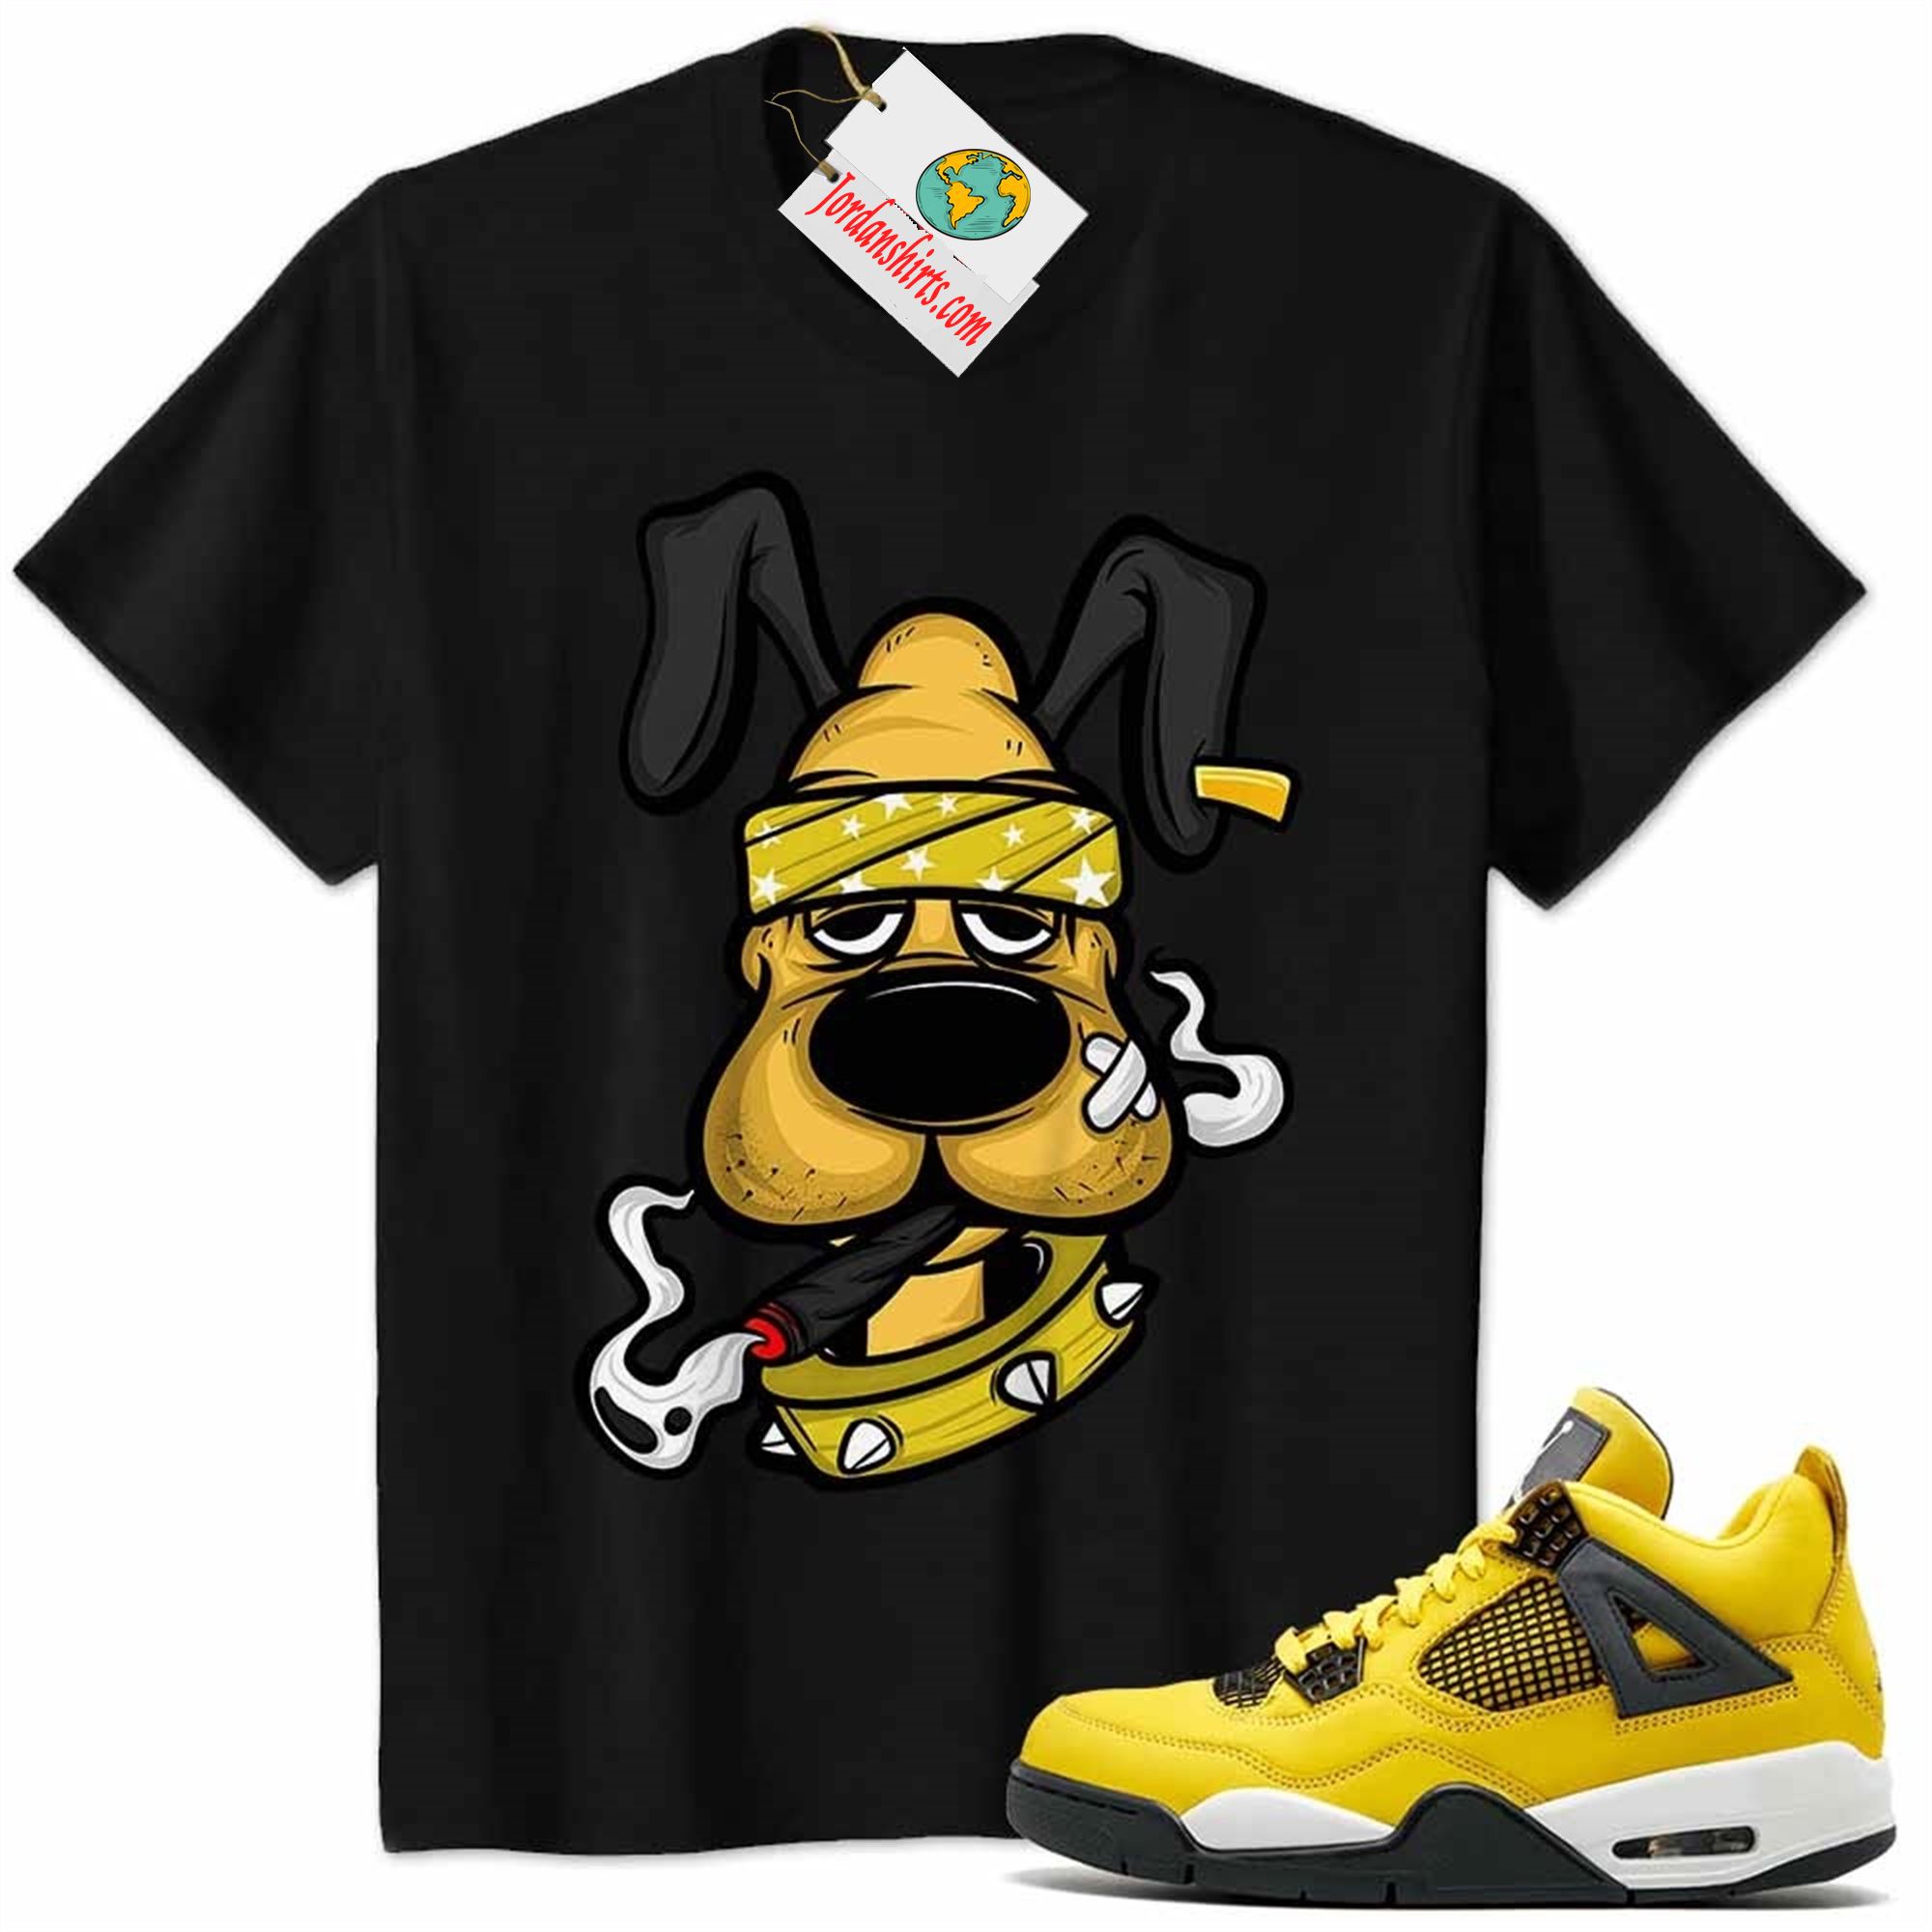 Jordan 4 Shirt, Gangster Pluto Smoke Weed Black Air Jordan 4 Tour Yellow Lightning 4s Plus Size Up To 5xl